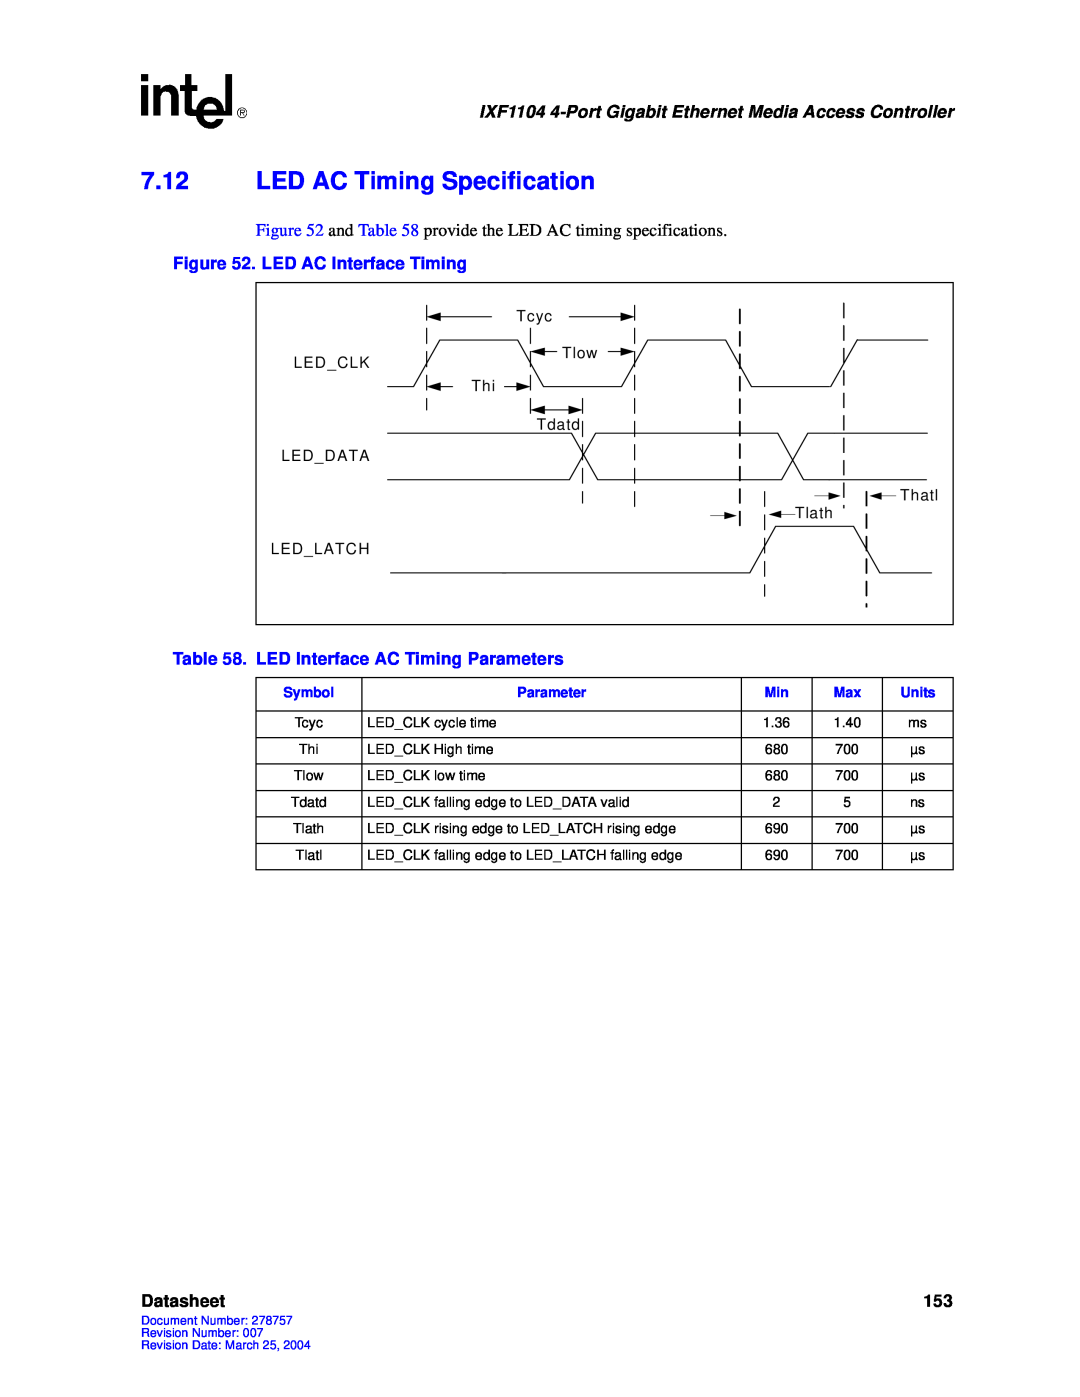 Intel IXF1104 manual 7.12LED AC Timing Specification, Datasheet 